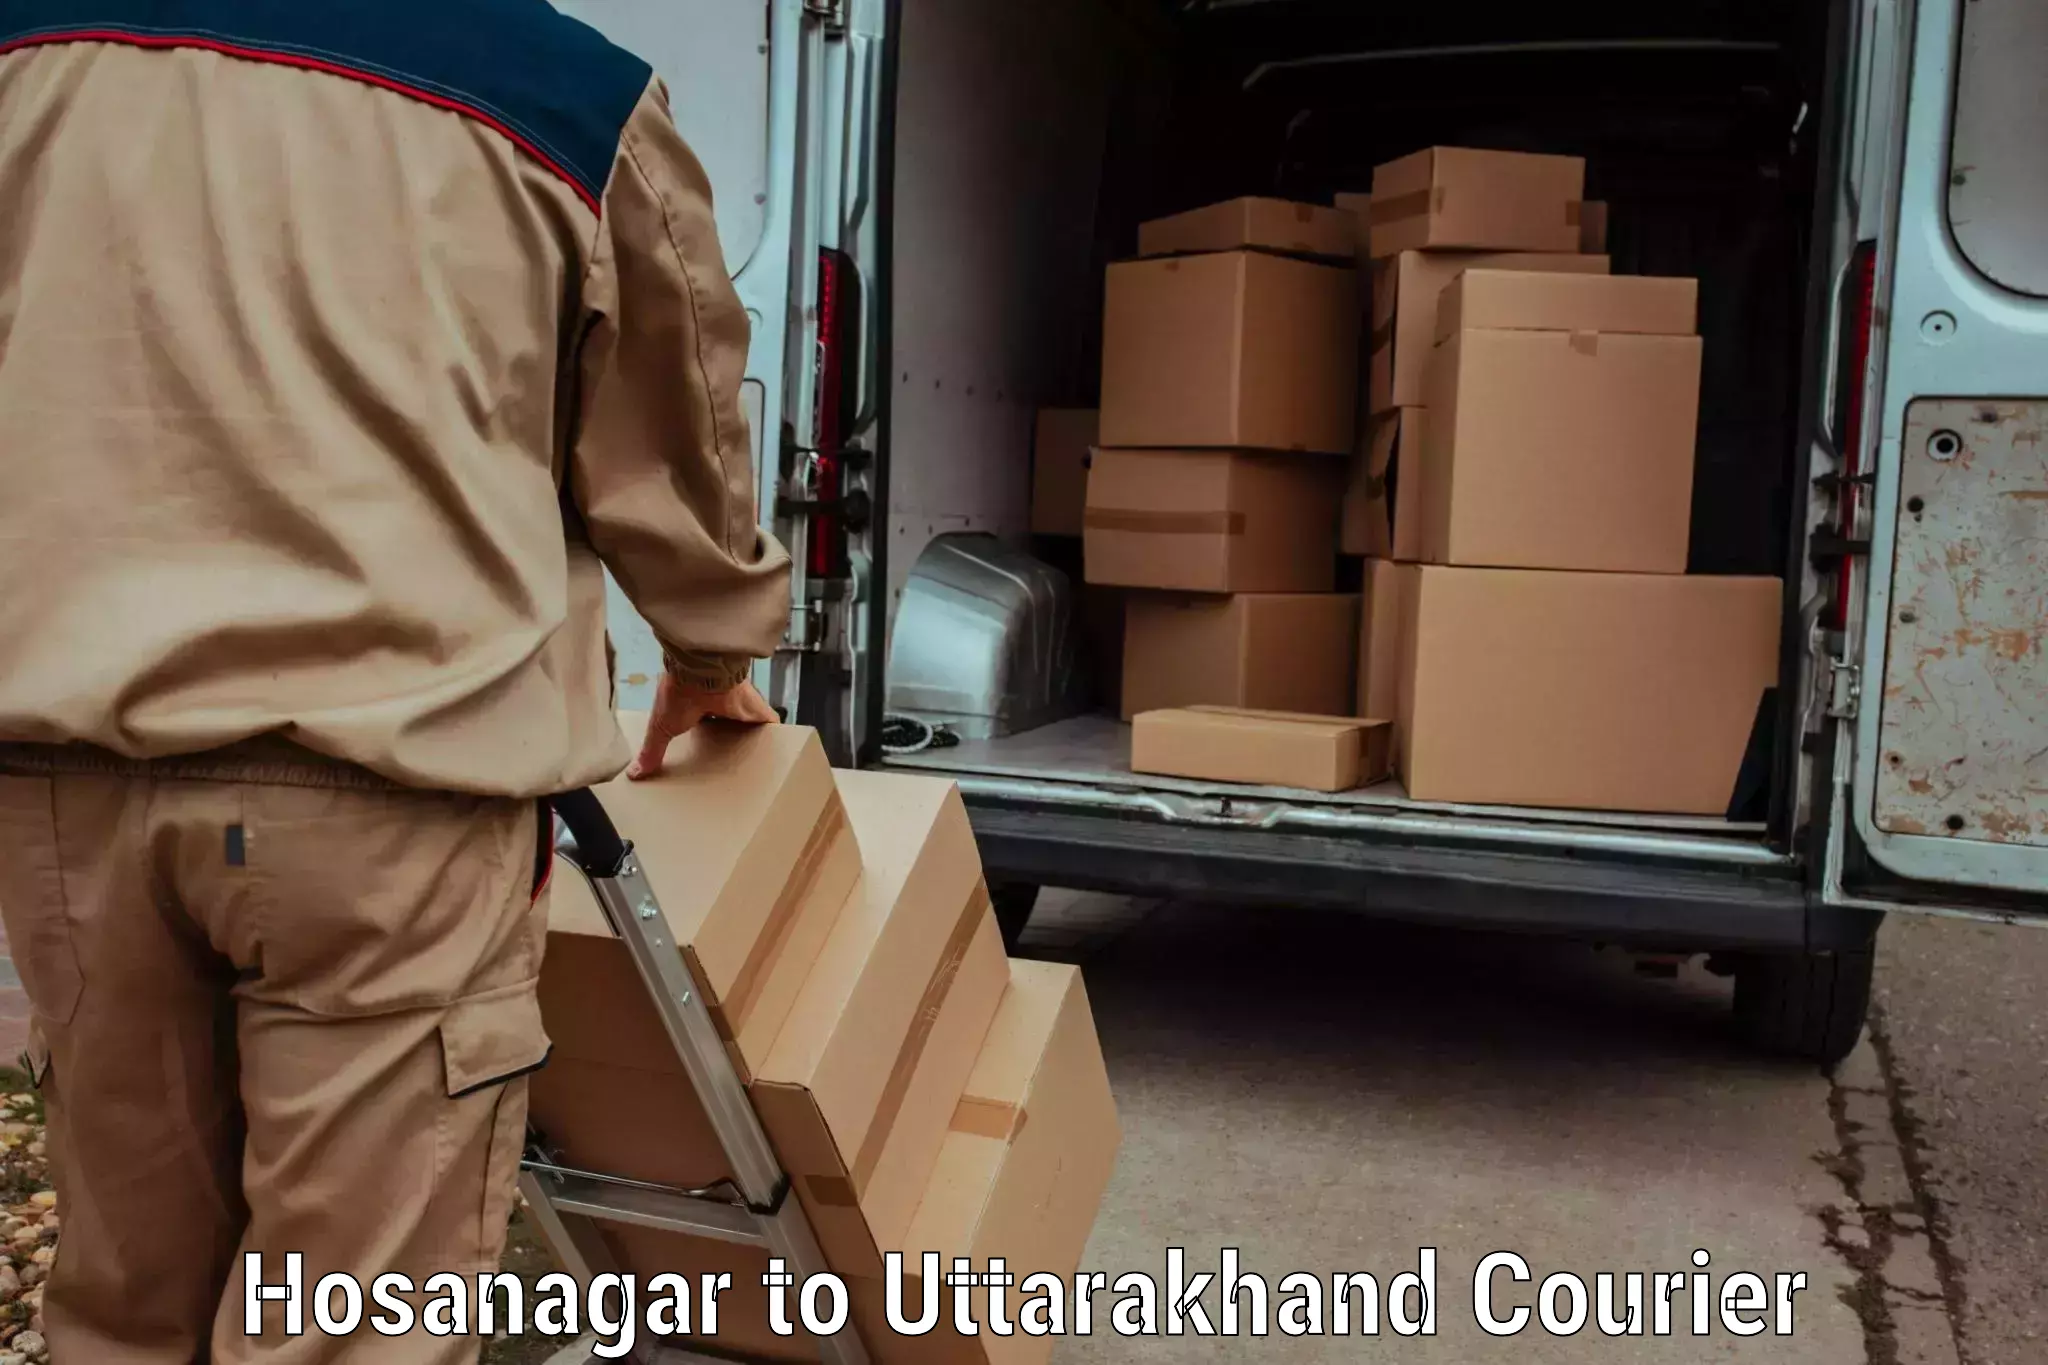 Premium courier services Hosanagar to Uttarakhand